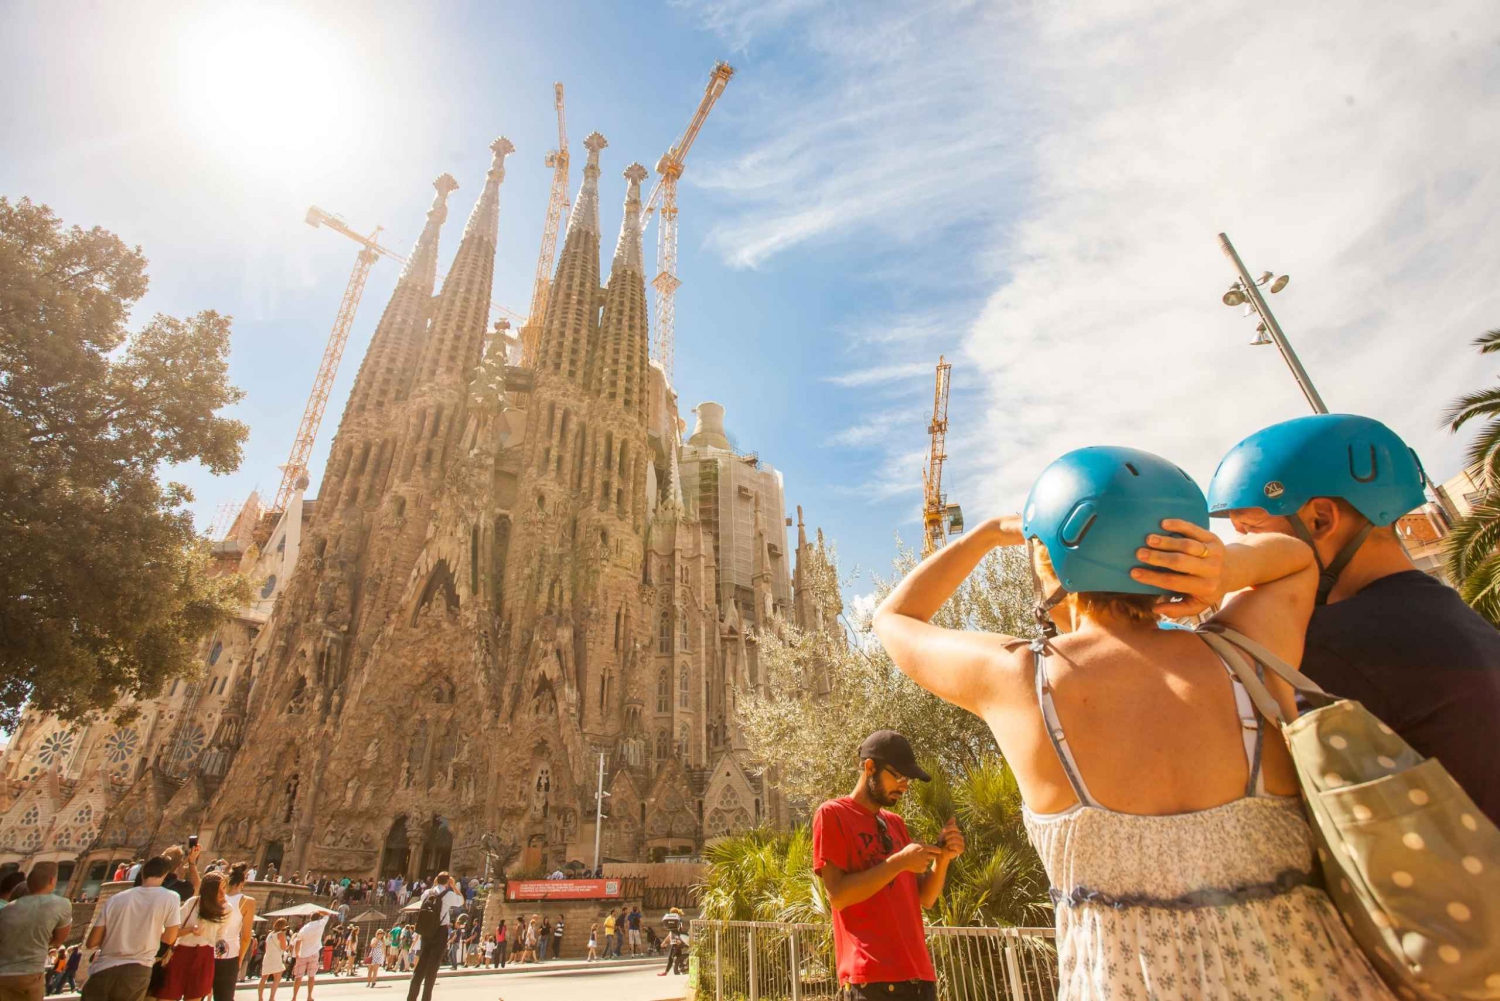 Excursão de Segway de 2 horas em Barcelona de Gaudí com guia ao vivo